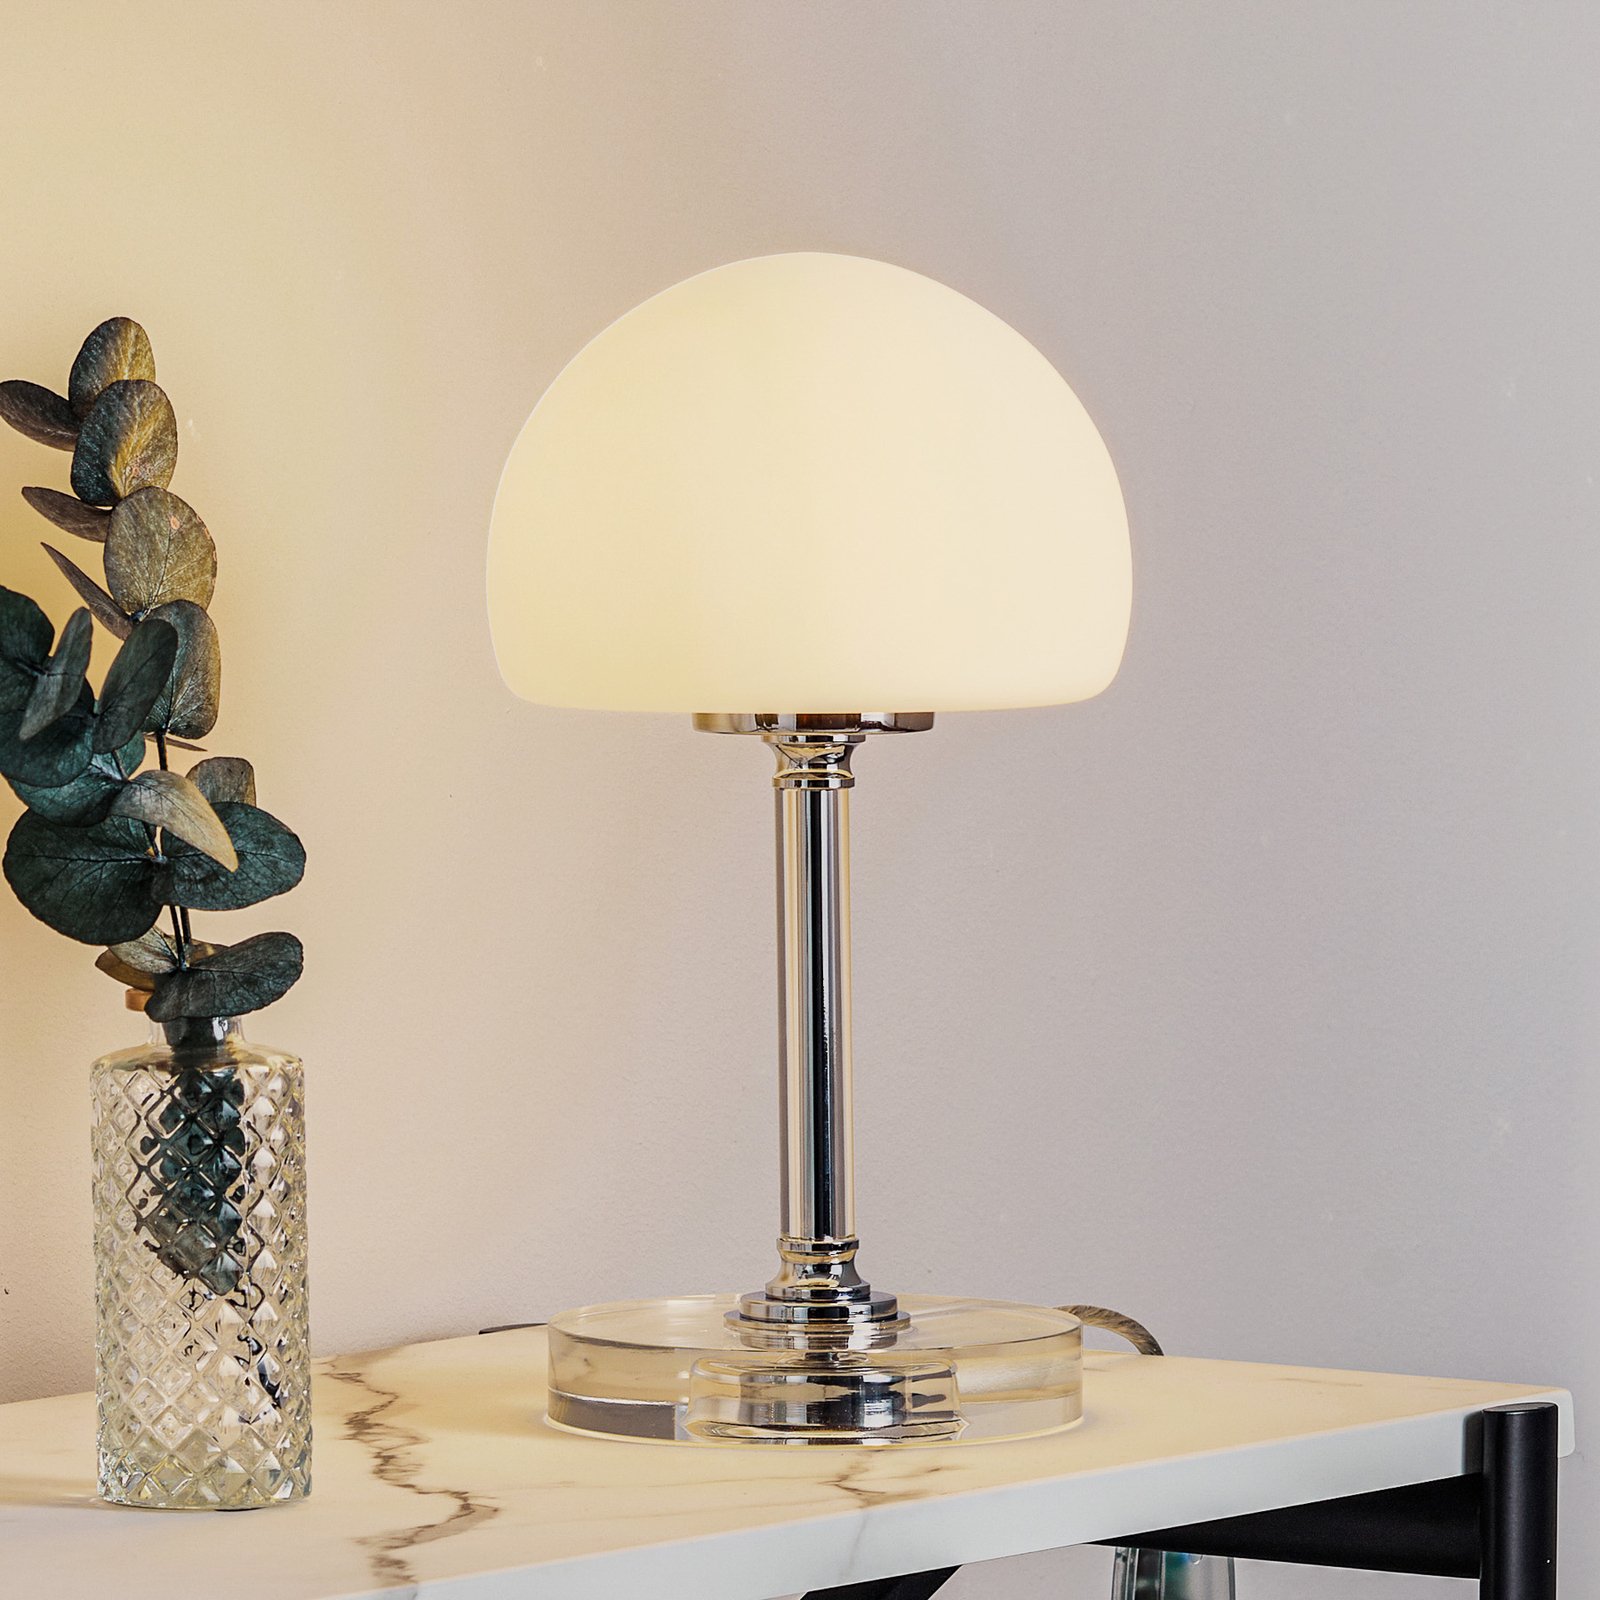 Ancilla - lampada LED da tavolo con dimmer, cromo